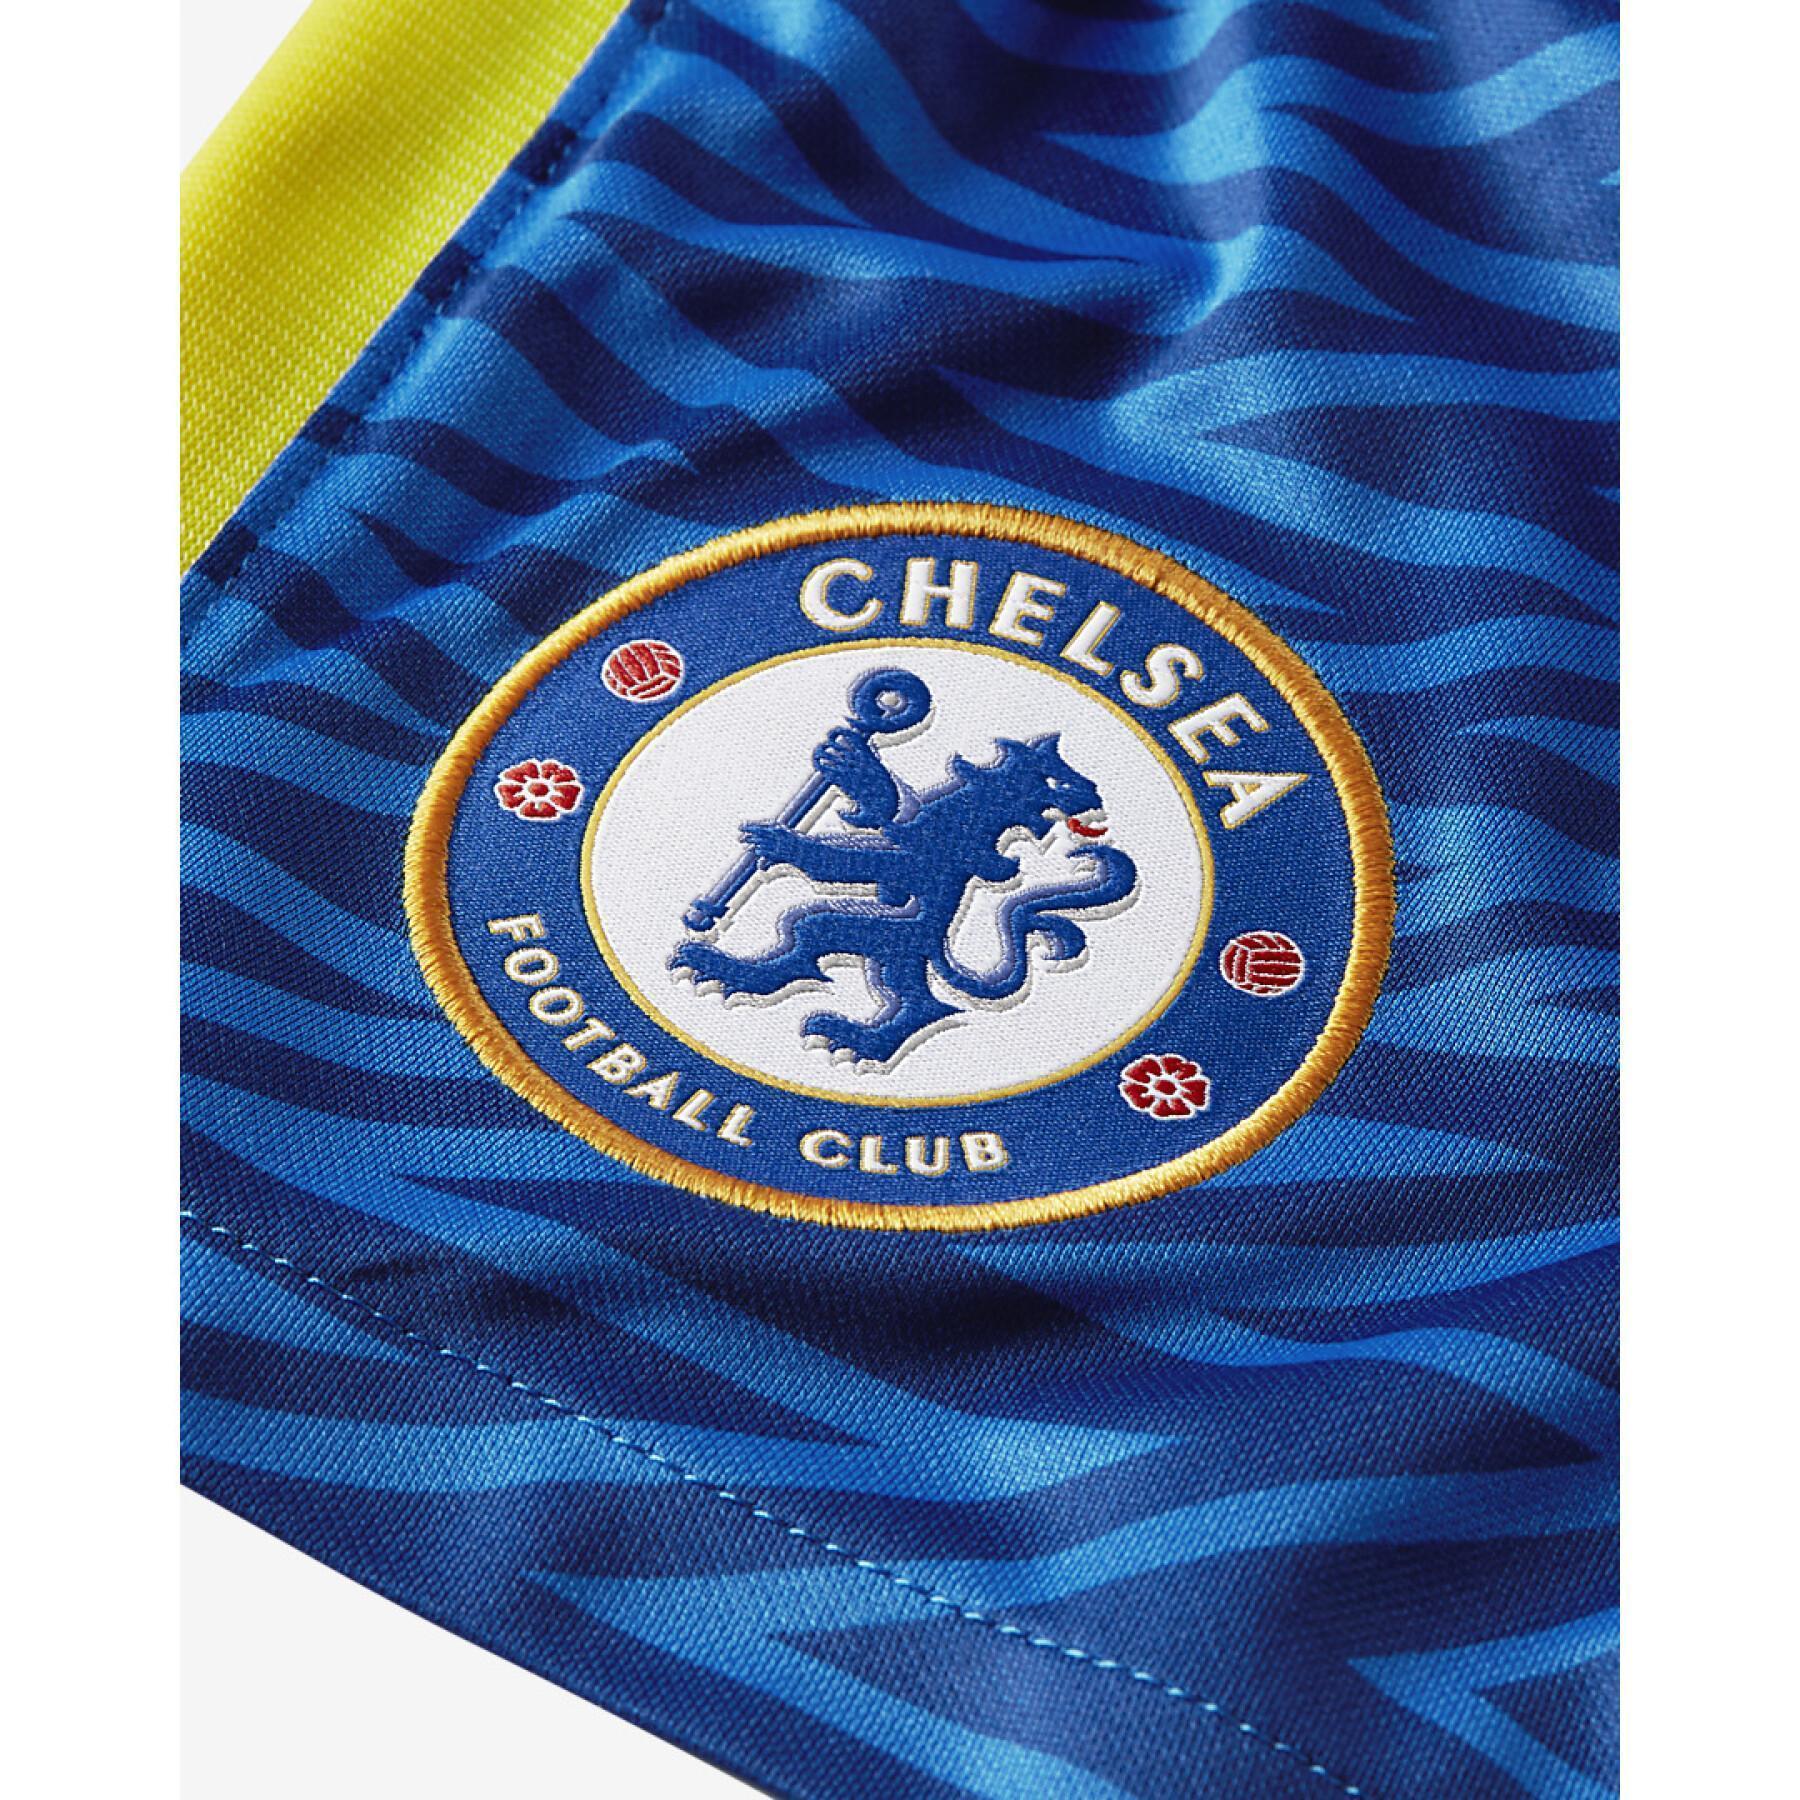 Pantalones cortos para el hogar Chelsea 2021/22